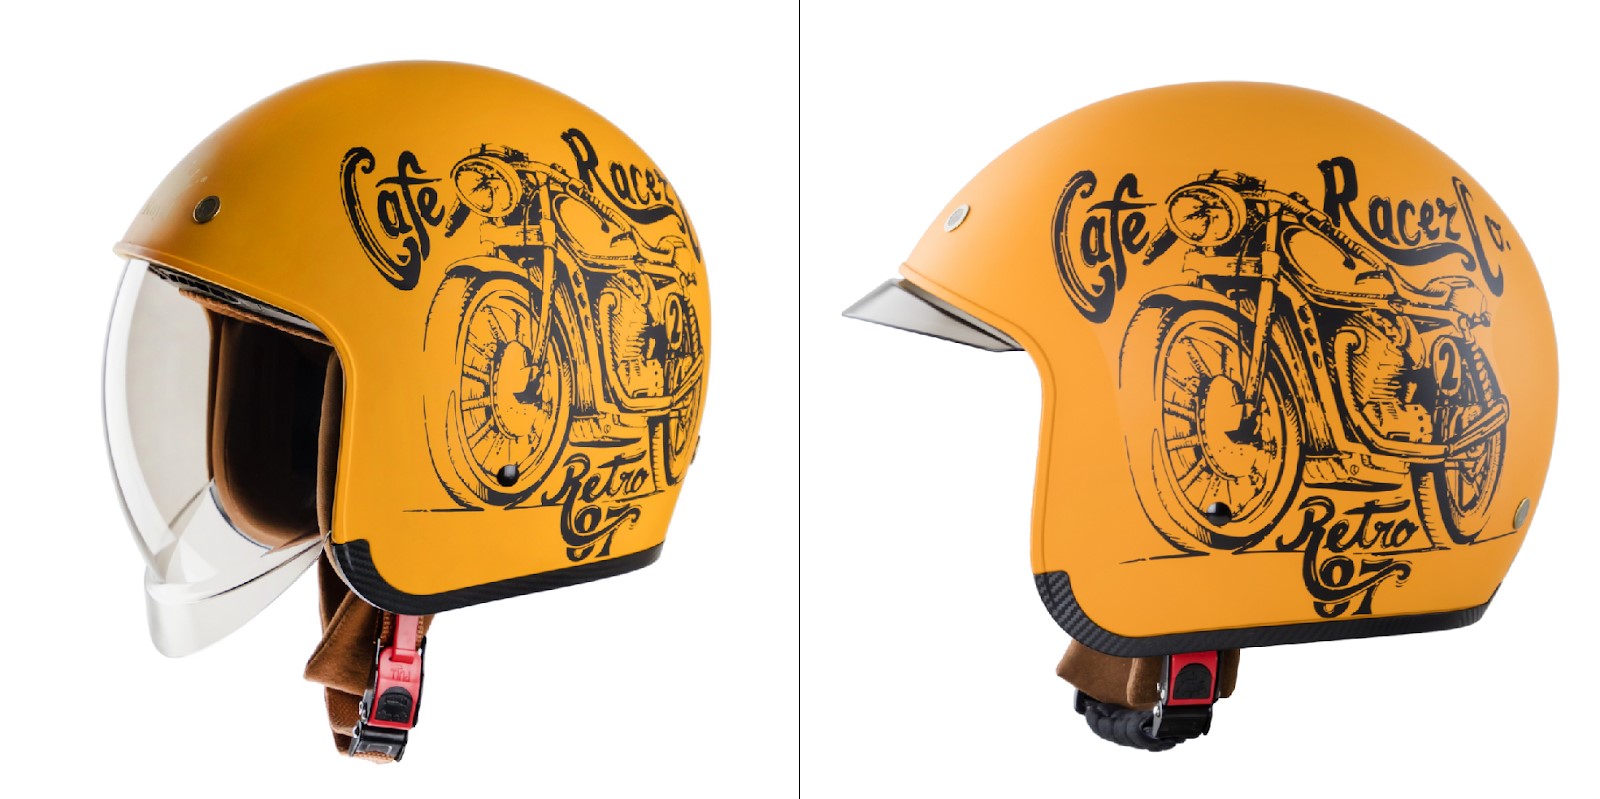 Mũ bảo hiểm Royal Helmet có gì nổi bật mà được các travel blogger nổi tiếng lựa chọn? - ảnh 3